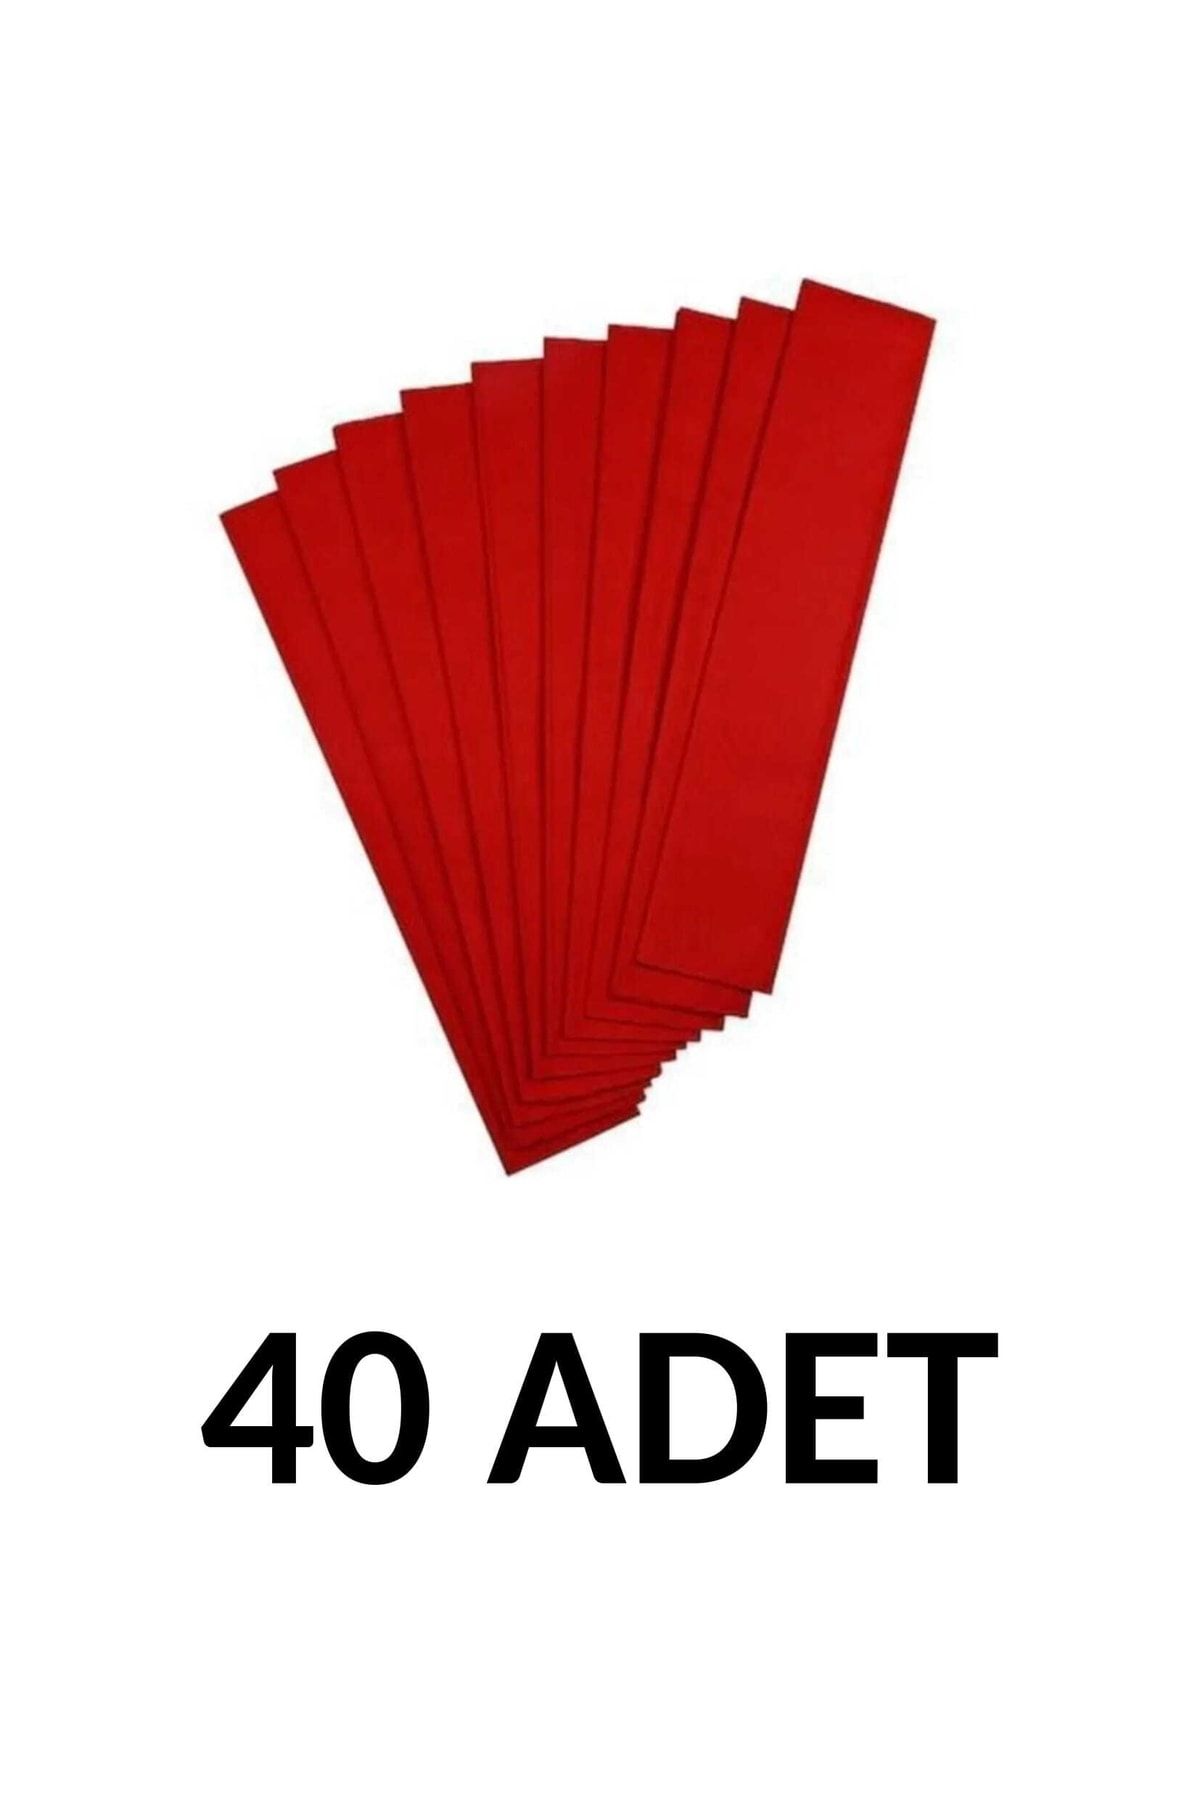 Ticon 40 Adet 50*200 Cm Kırmızı Renk Krapon Kağıdı